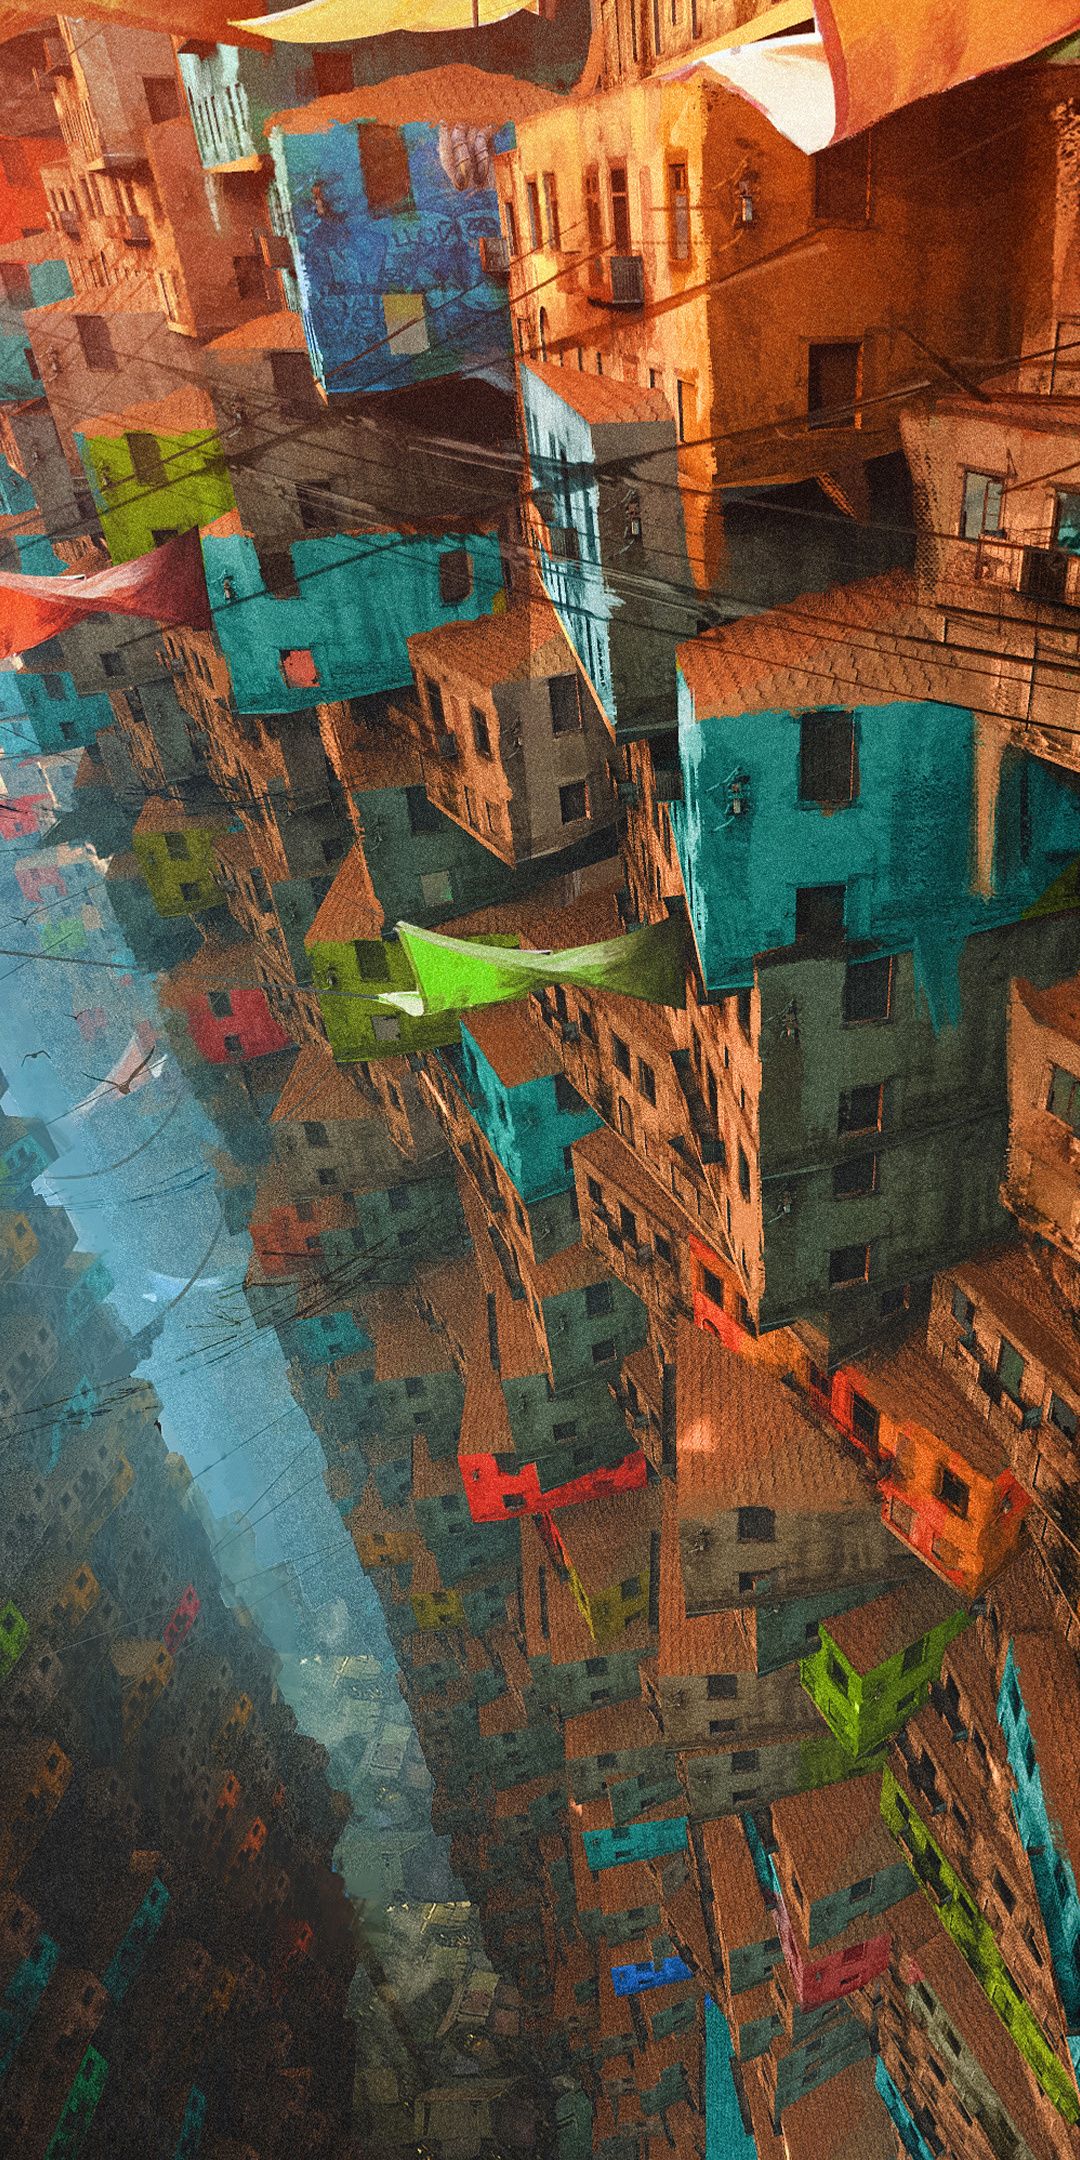 قشنگ ترین والپیپر گوشی سامسونگ از شهر رنگارنگ با ساختمان های دیدنی 